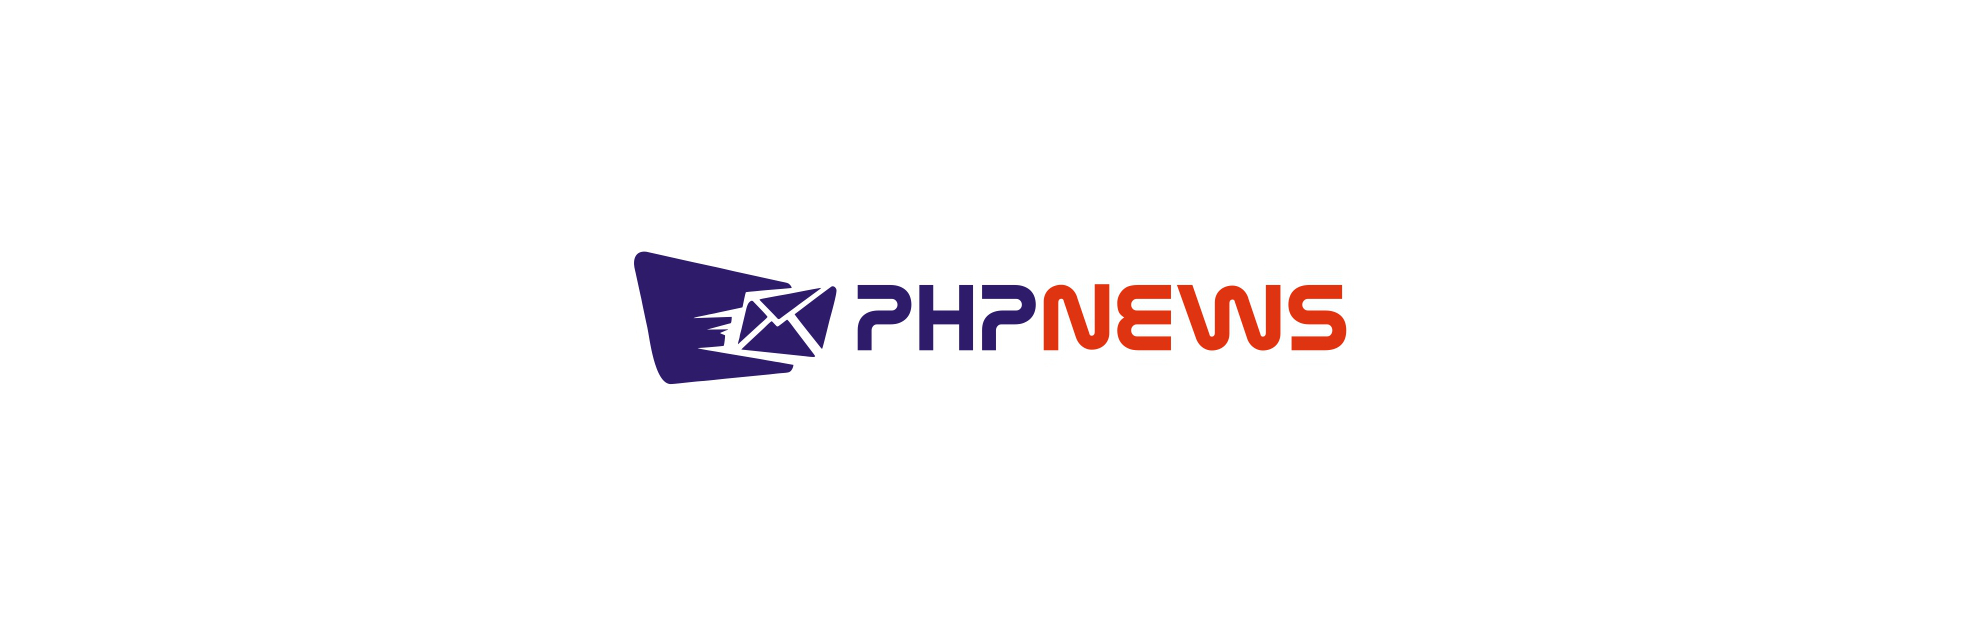 PHP NEWS - newsletter logo